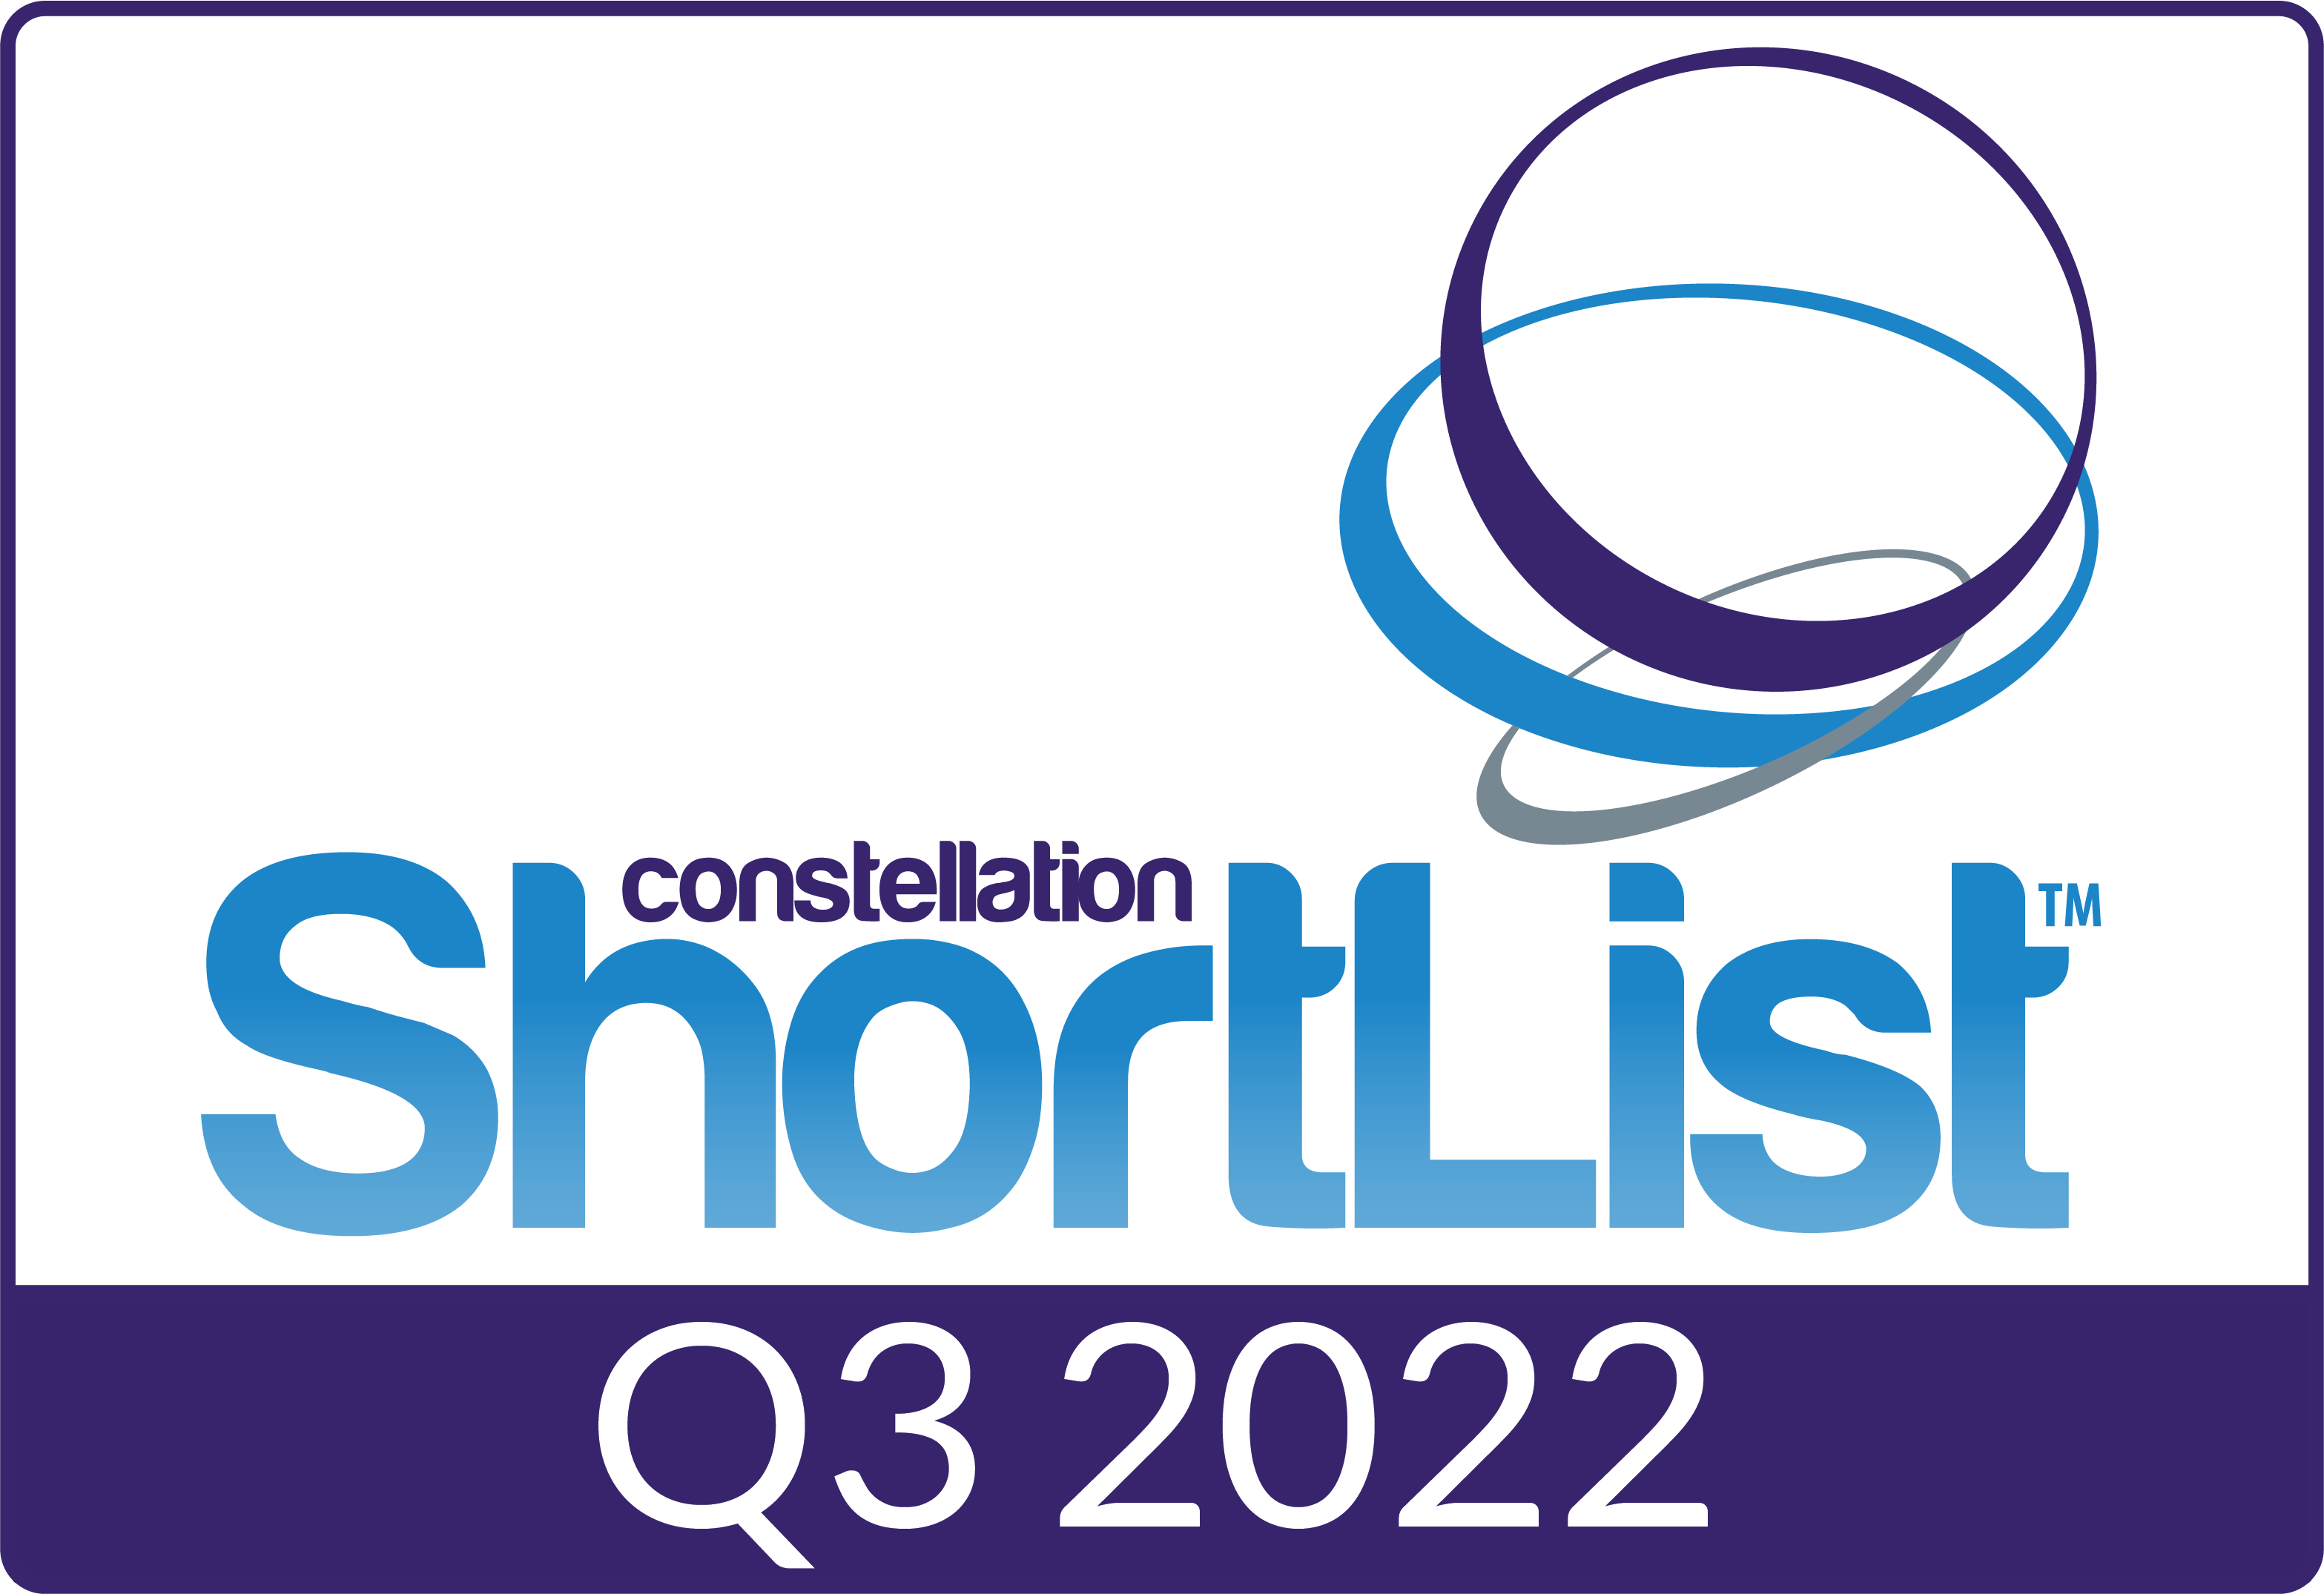 Constellation Shortlist Q3 2022